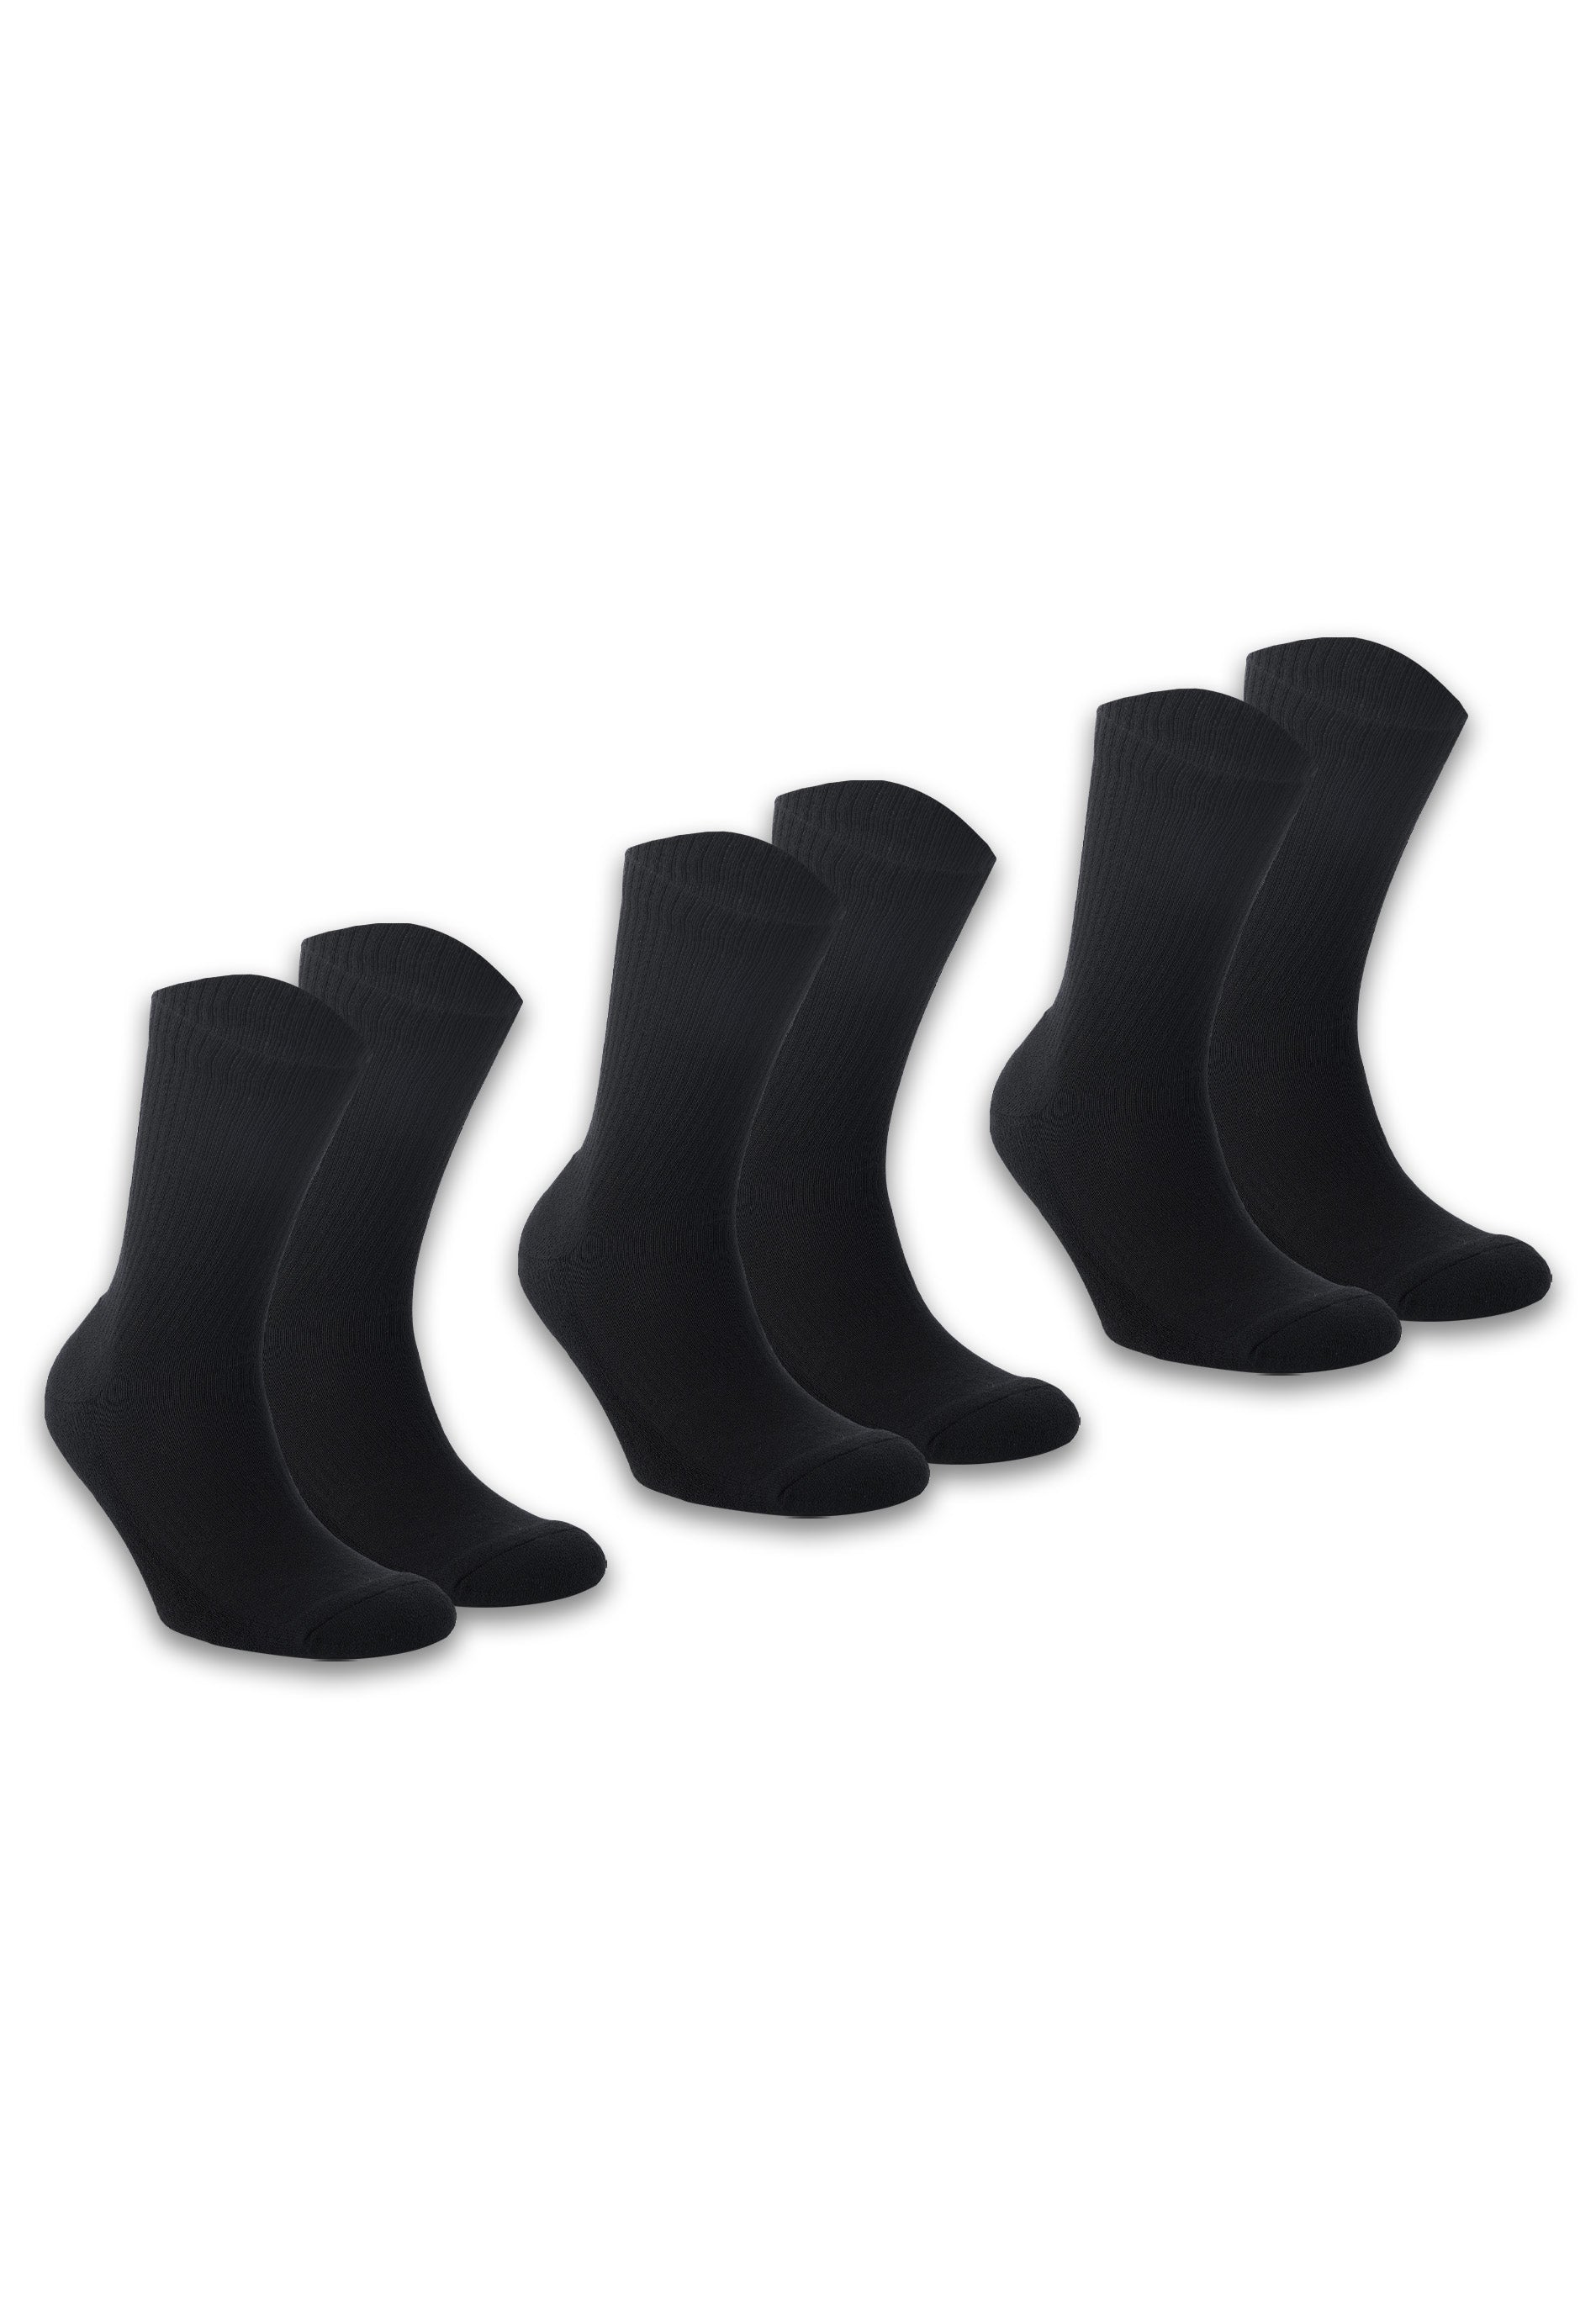 SURRCO | Unisex Socken aus recycelter Baumwolle-Mix im 3er-Pack